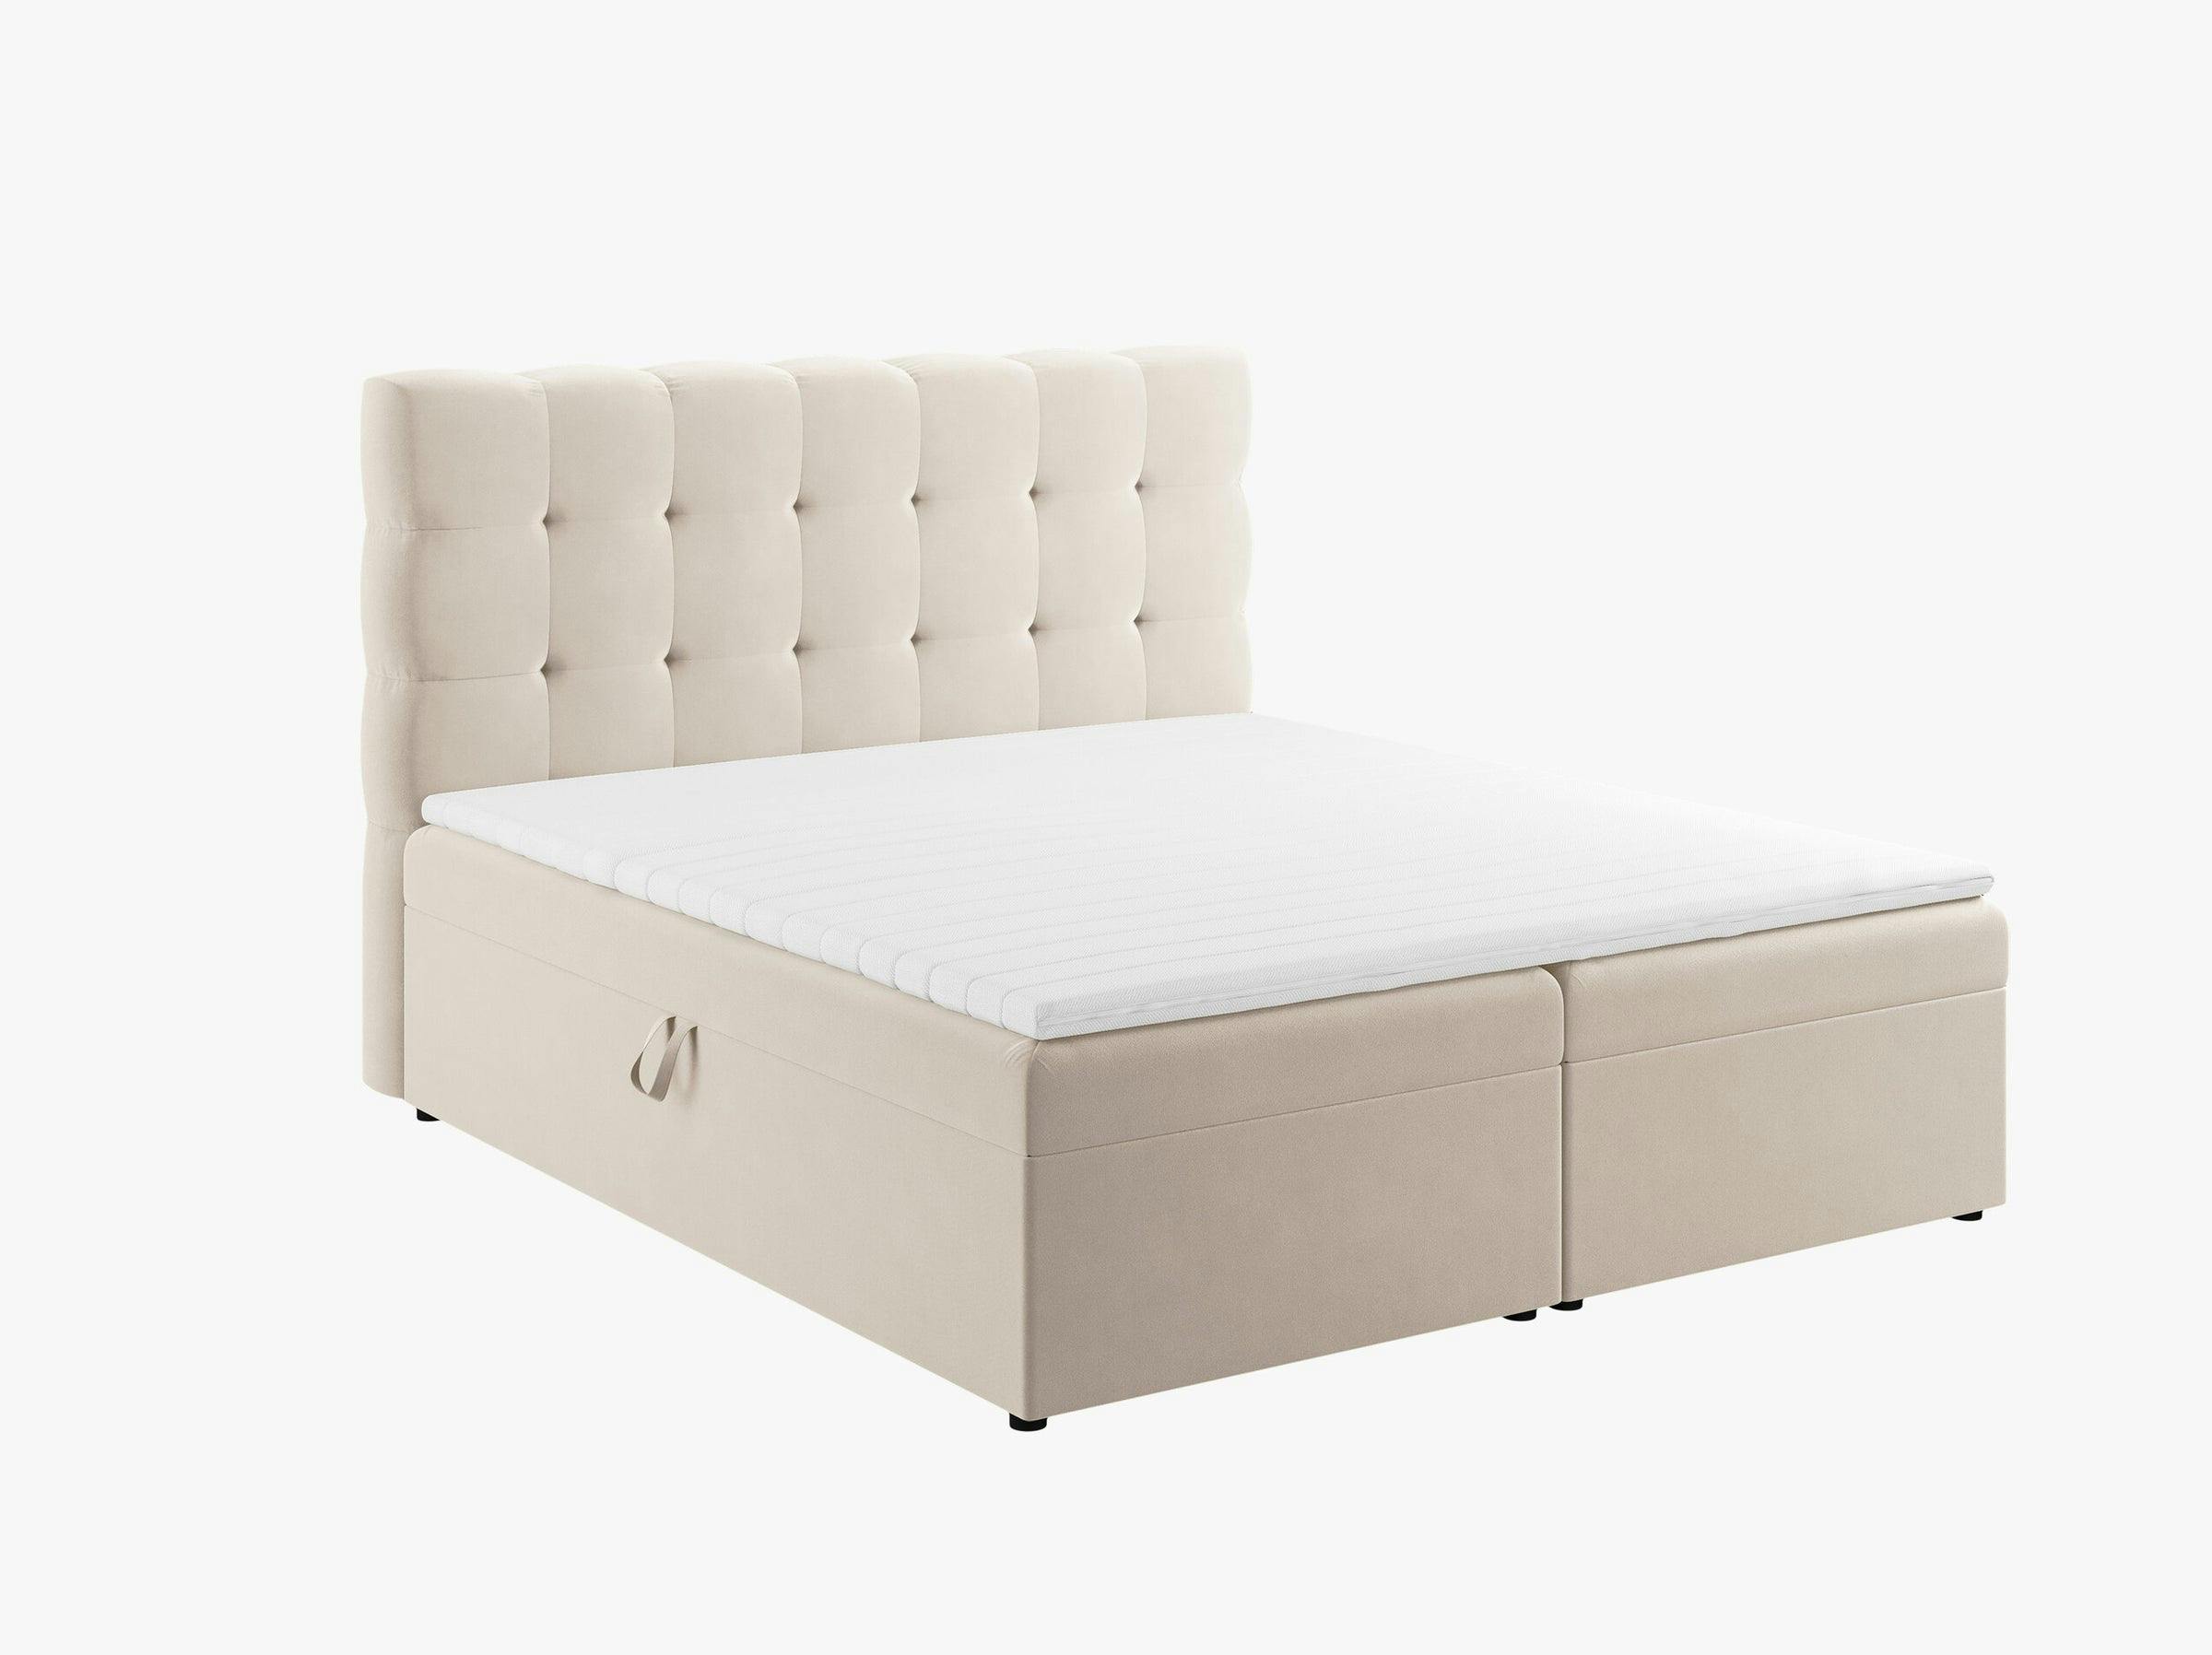 Mamaia beds & mattresses velvet light beige